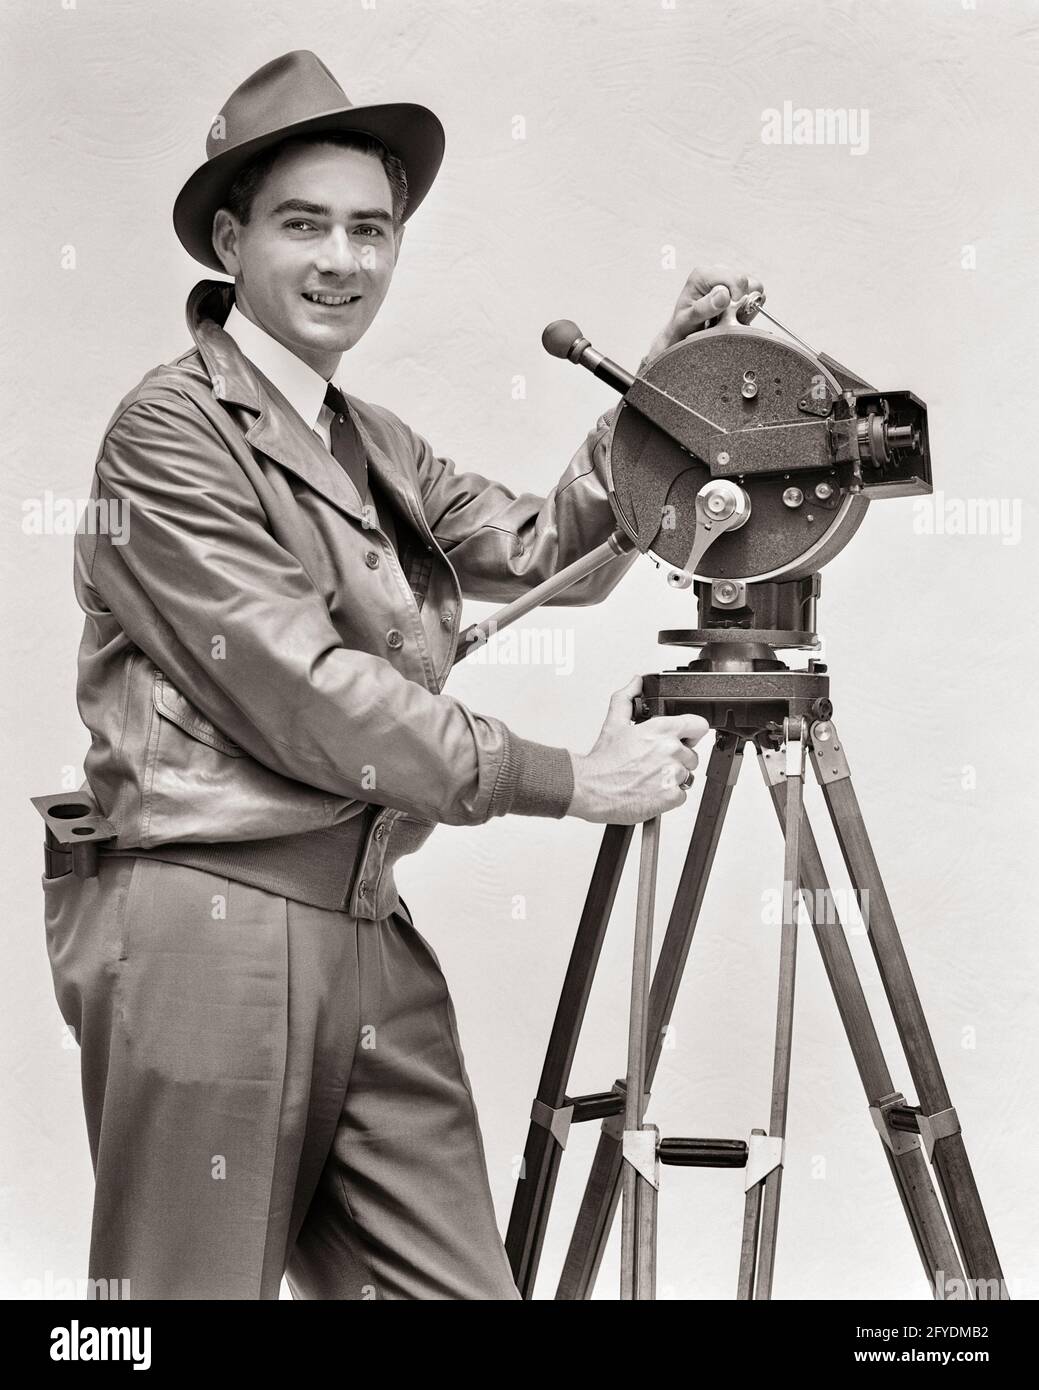 1930 UOMO SORRIDENTE CINEMATOGRAFO CHE OPERA AKELEY MANOVELLA VIDEOCAMERA GUARDANDO LA MACCHINA FOTOGRAFICA CHE INDOSSA GIACCA IN PELLE FEDORA HAT - U153 HAR001 HARS CARRIERA TECNOLOGIA INFORMAZIONI FELICE GIOIA LIFESTYLE JOBS STUDIO RIPRESA MOVIMENTO FILMARE COPY SPACE MEZZA LUNGHEZZA PERSONE ISPIRAZIONE MASCHI CAMERAMAN PROFESSIONE FIDUCIA TREPPIEDE PORTATILE B&W CONTATTO OCCHIO MANOVELLA FEDORA ABILITÀ OCCUPAZIONE FELICITÀ ABILITÀ FUNZIONAMENTO ALLEGRO AVVENTURA STRATEGIA CARRIERE SCELTA CONOSCENZA DIREZIONE LAVORO ORGOGLIO SU AUTORITÀ OCCUPAZIONE PROFESSIONI SORRIDE CONNESSIONE CONCETTUALE GIACCA IN PELLE GIOIOSA ED ELEGANTE Foto Stock